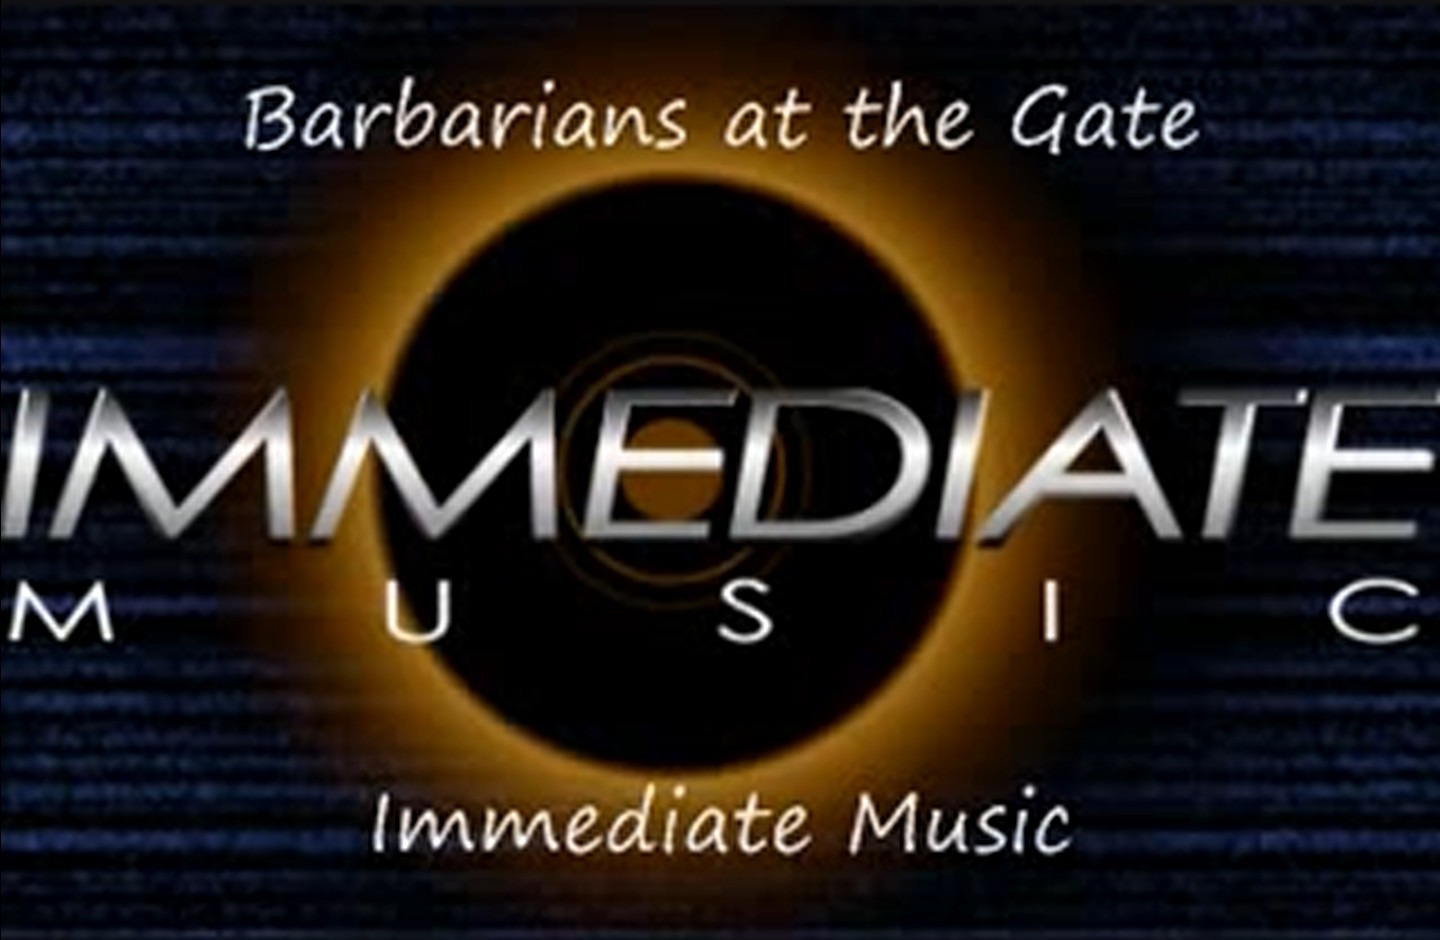 Immediate Music - Barbarians at the Gate (어쌔신 크리드 유니티)